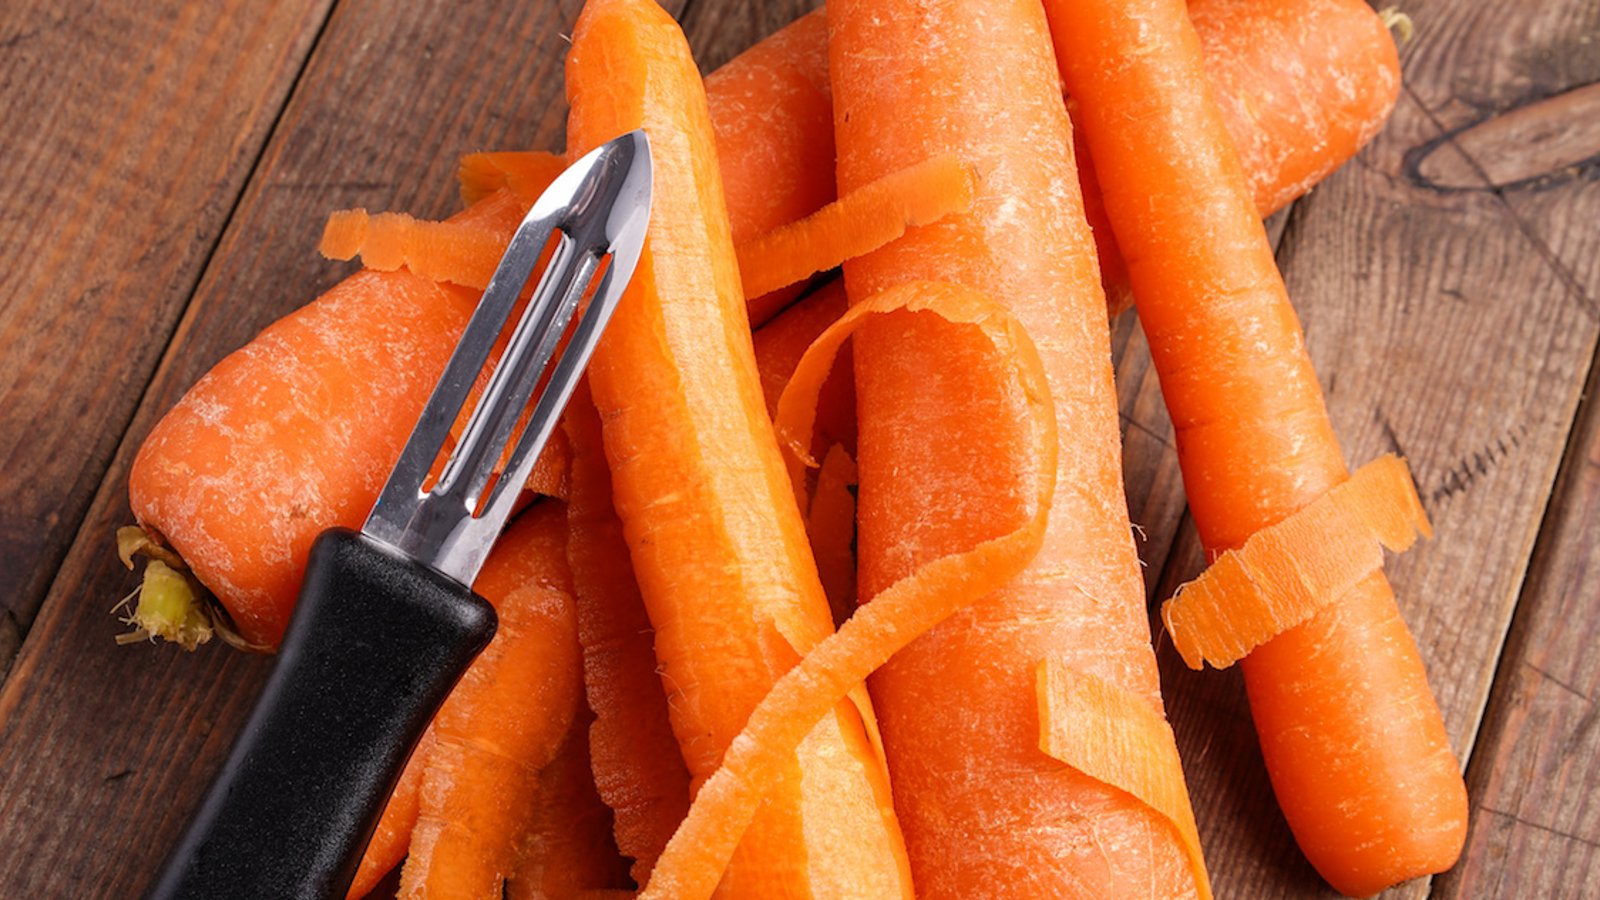 Faut-il éplucher les carottes avant de les cuisiner ou de les manger?